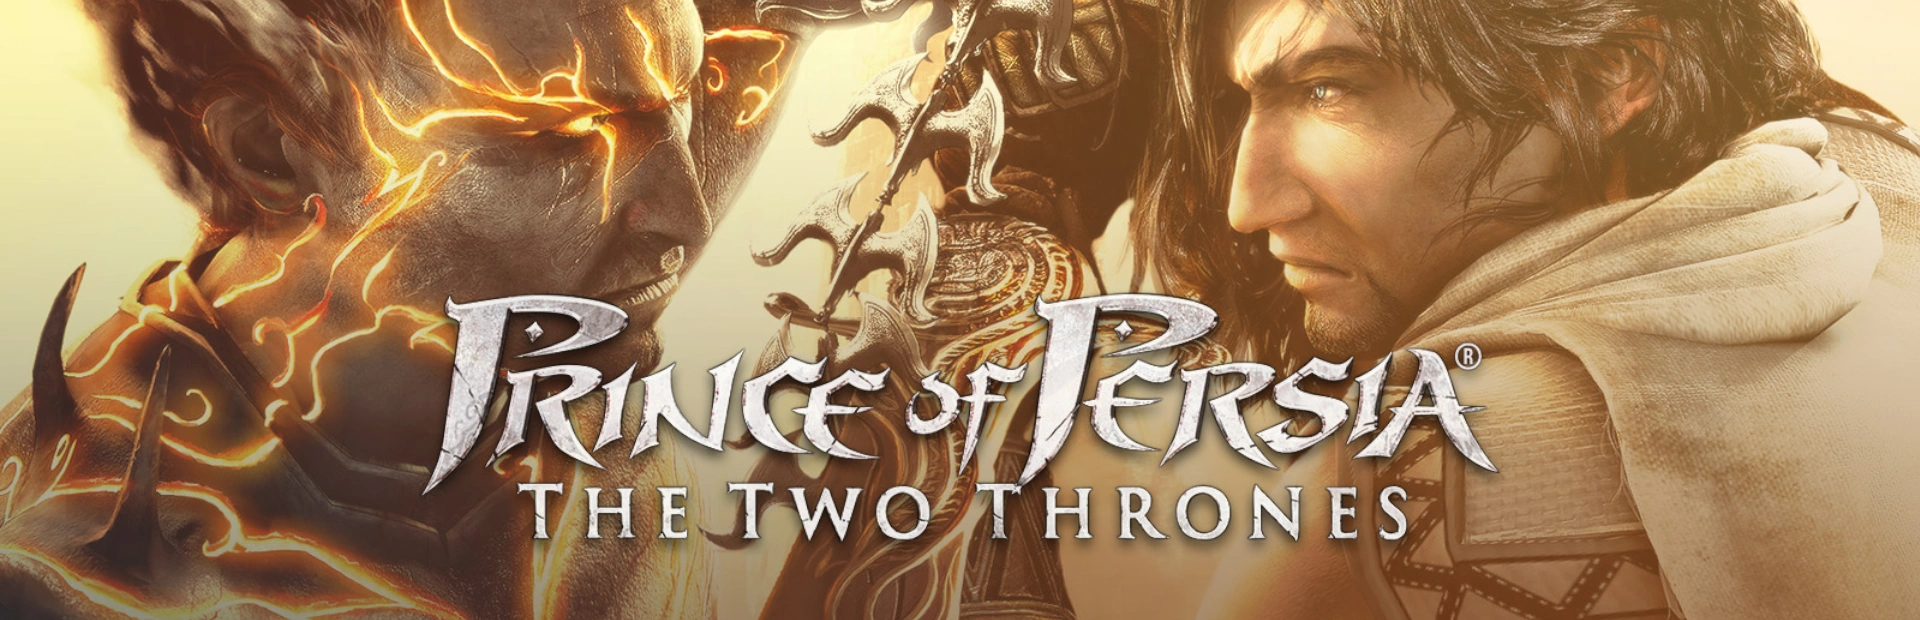 دانلود بازی Prince of Persia The Two Thrones برای کامپیوتر